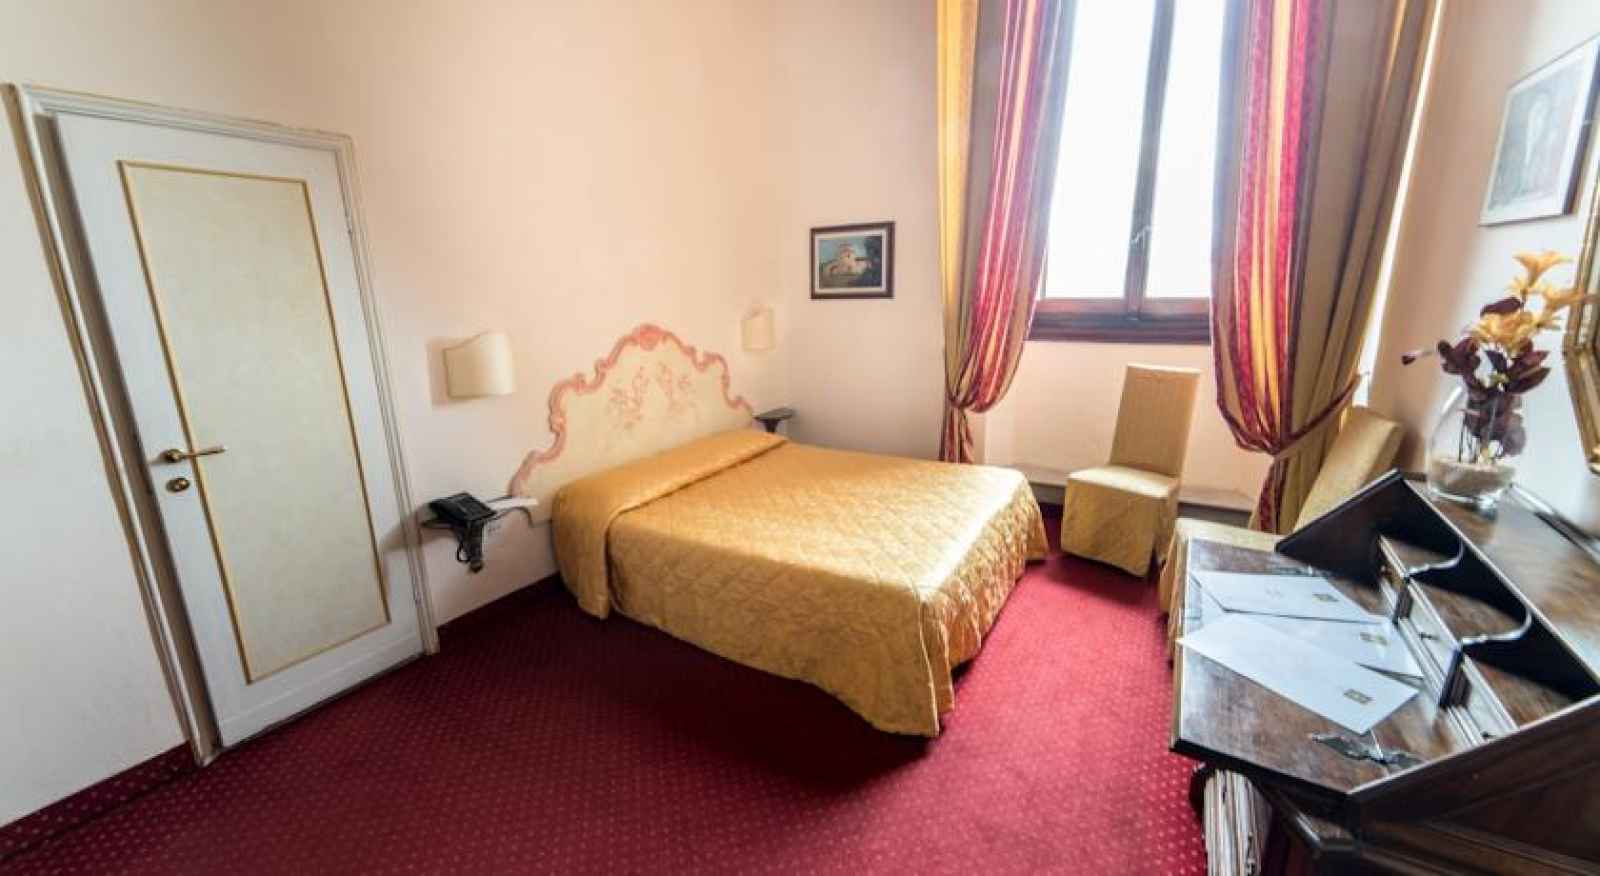 Italie - Florence - Toscane - Hôtel Paris 3*